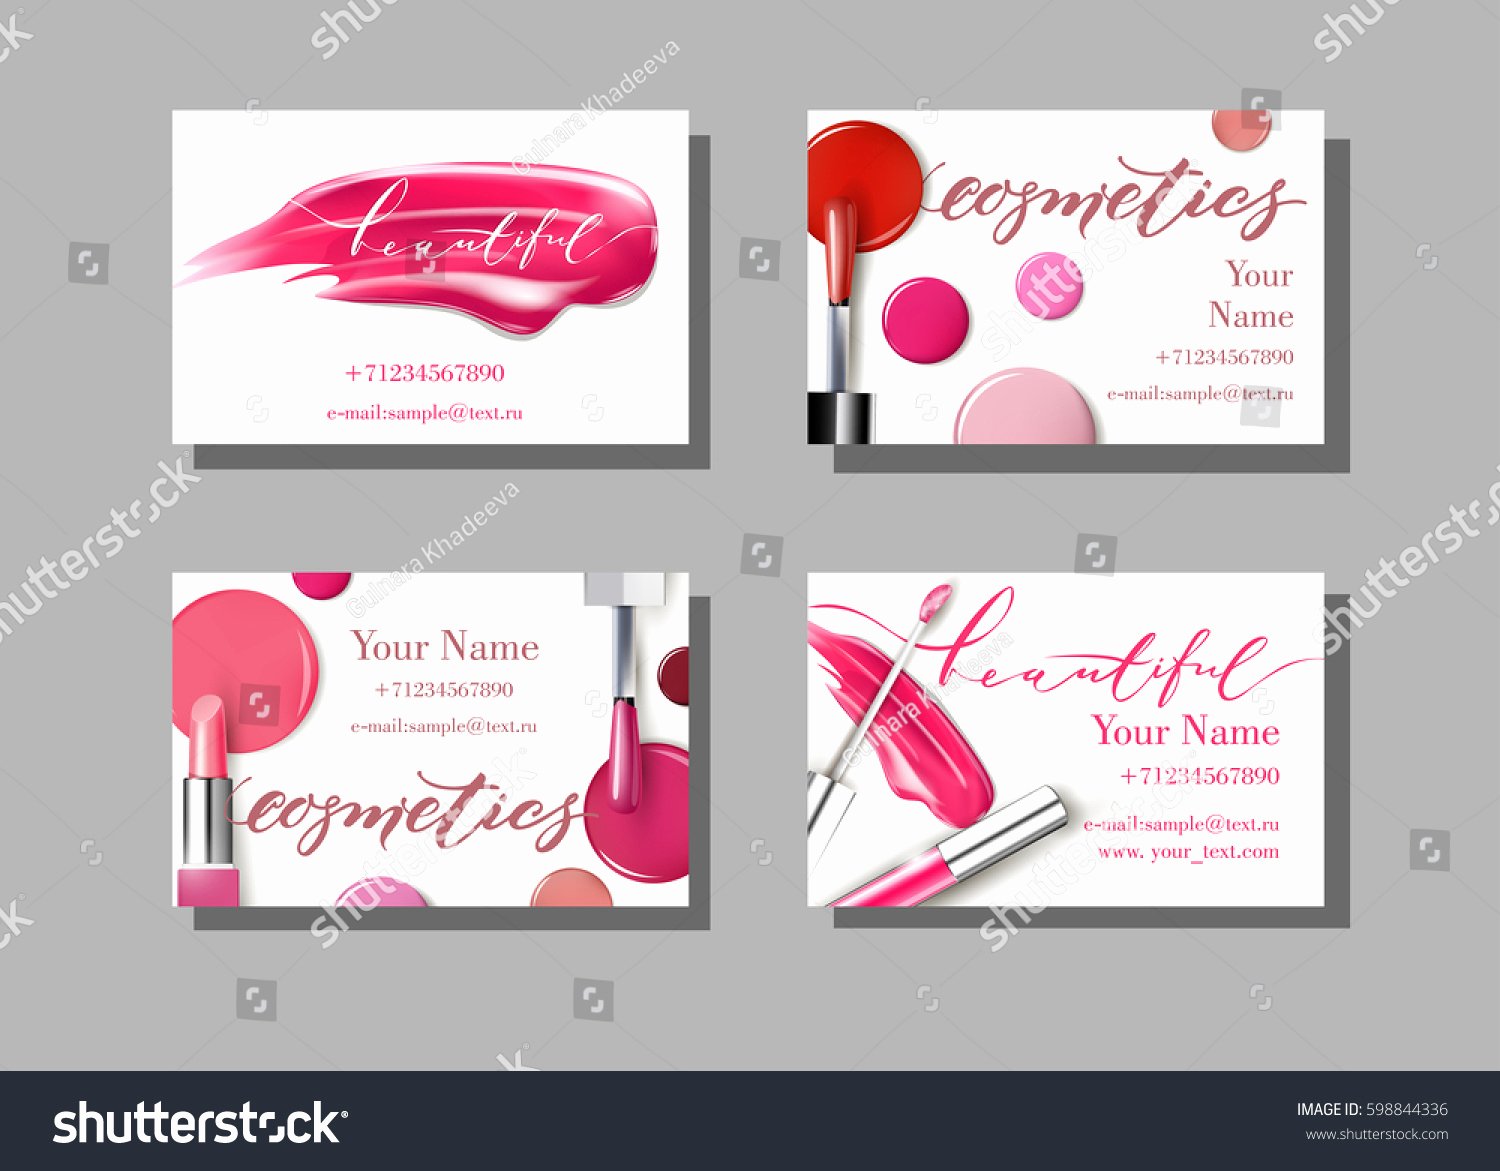 Makeup Artist Website Template Inspirational Makeup Artist Business Card Vector Template Stock Vector